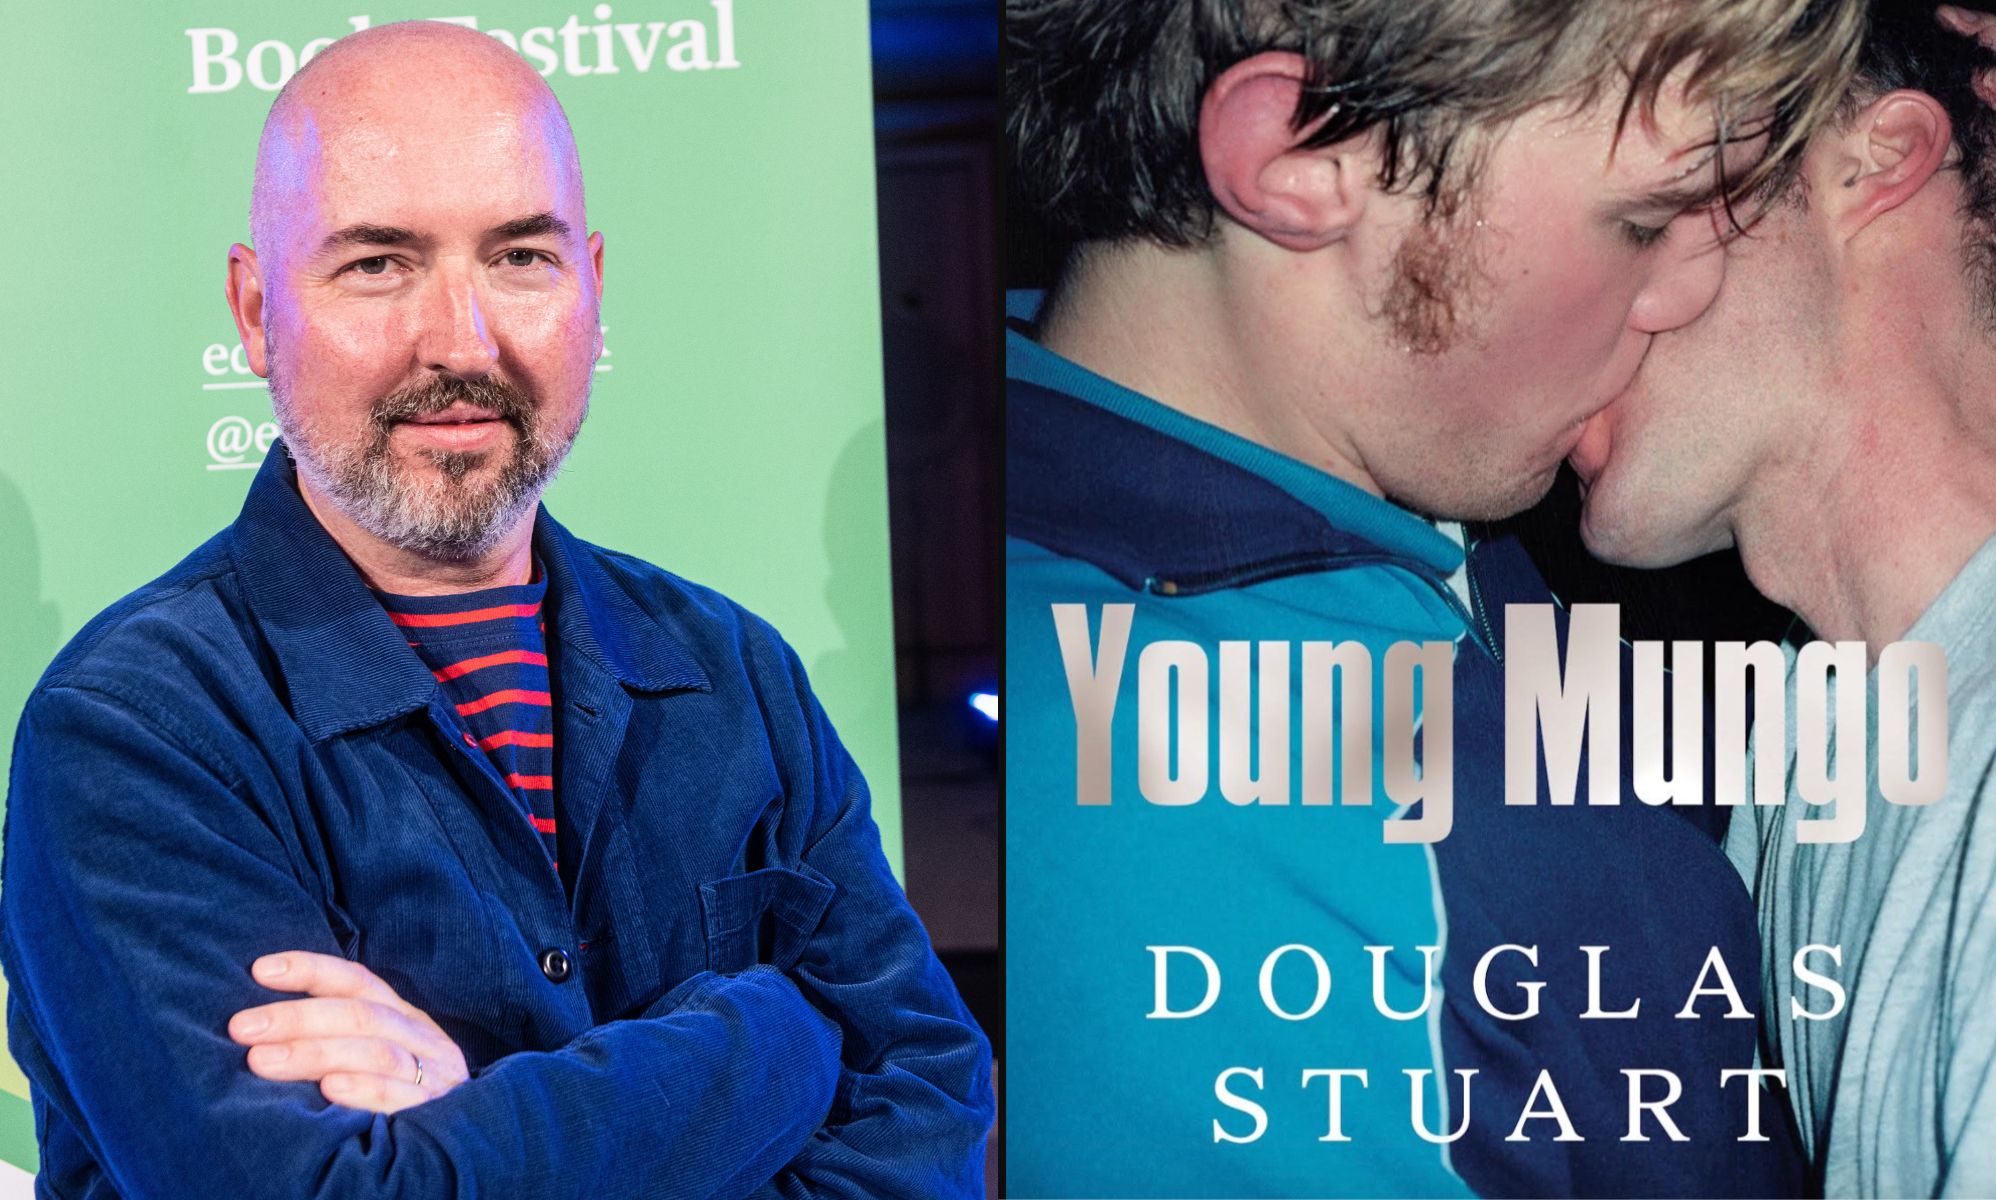 La novela queer Young Mungo va a ser adaptada a una serie de televisión